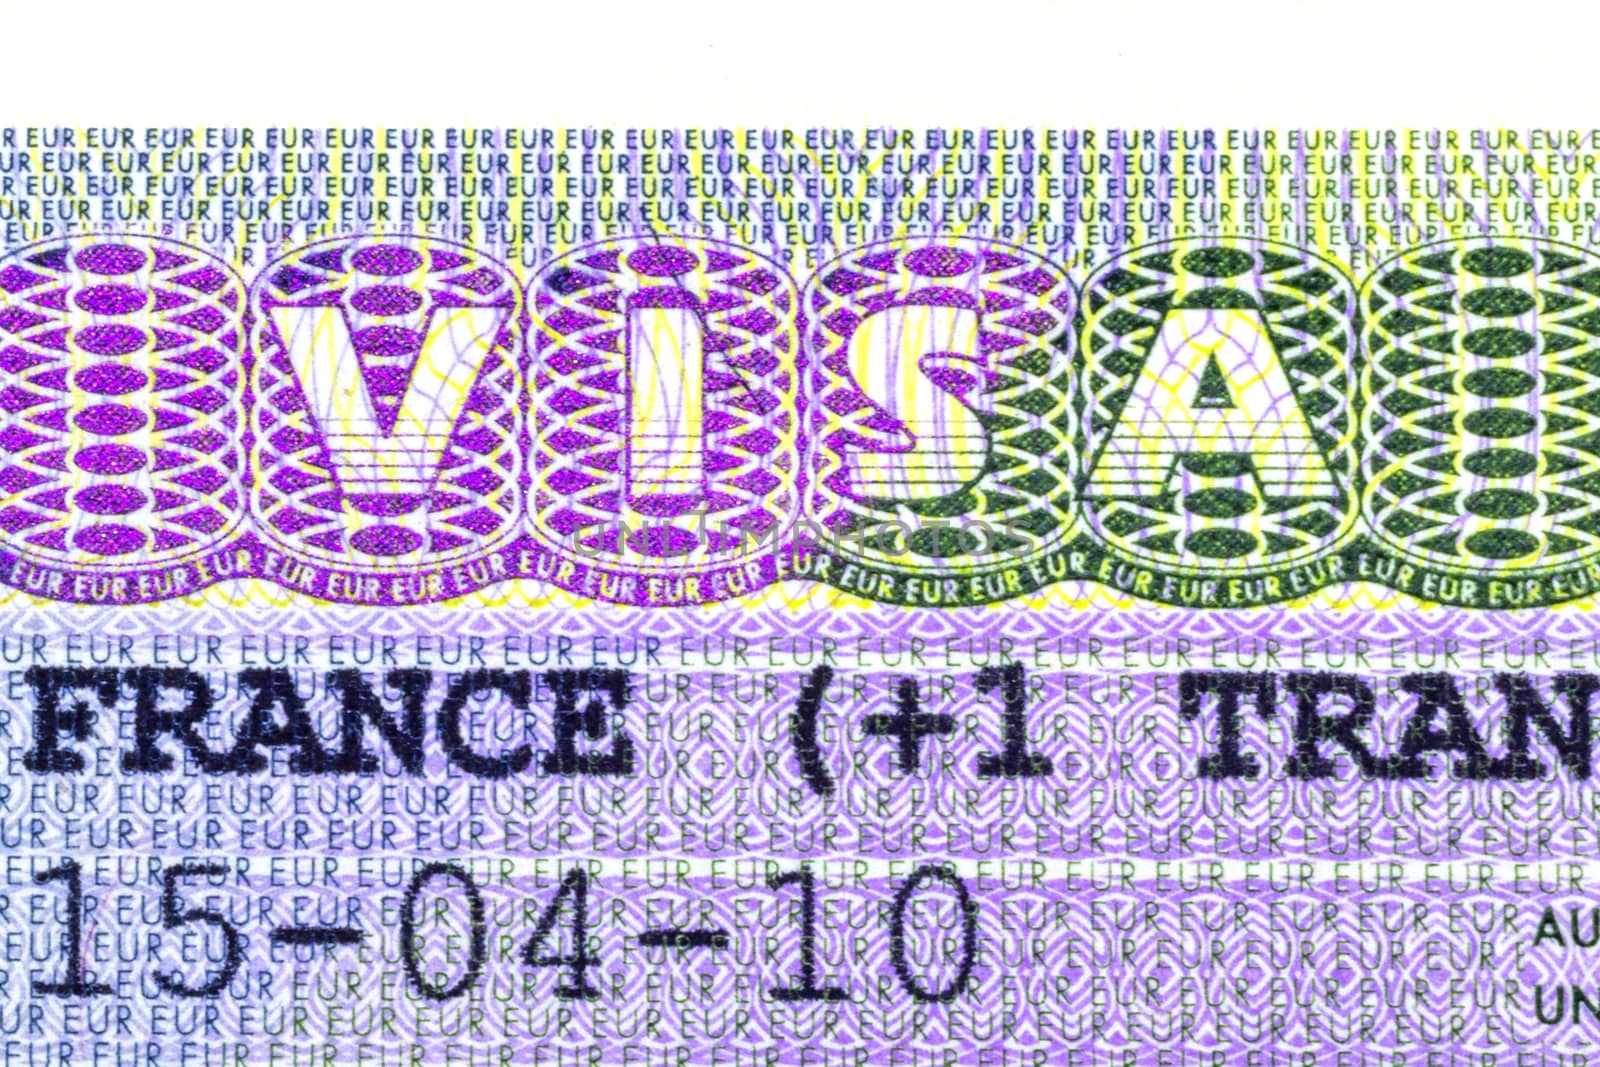 Close up of a Schengen visa allowing the passport holder to travel inside the Schengen treaty territory